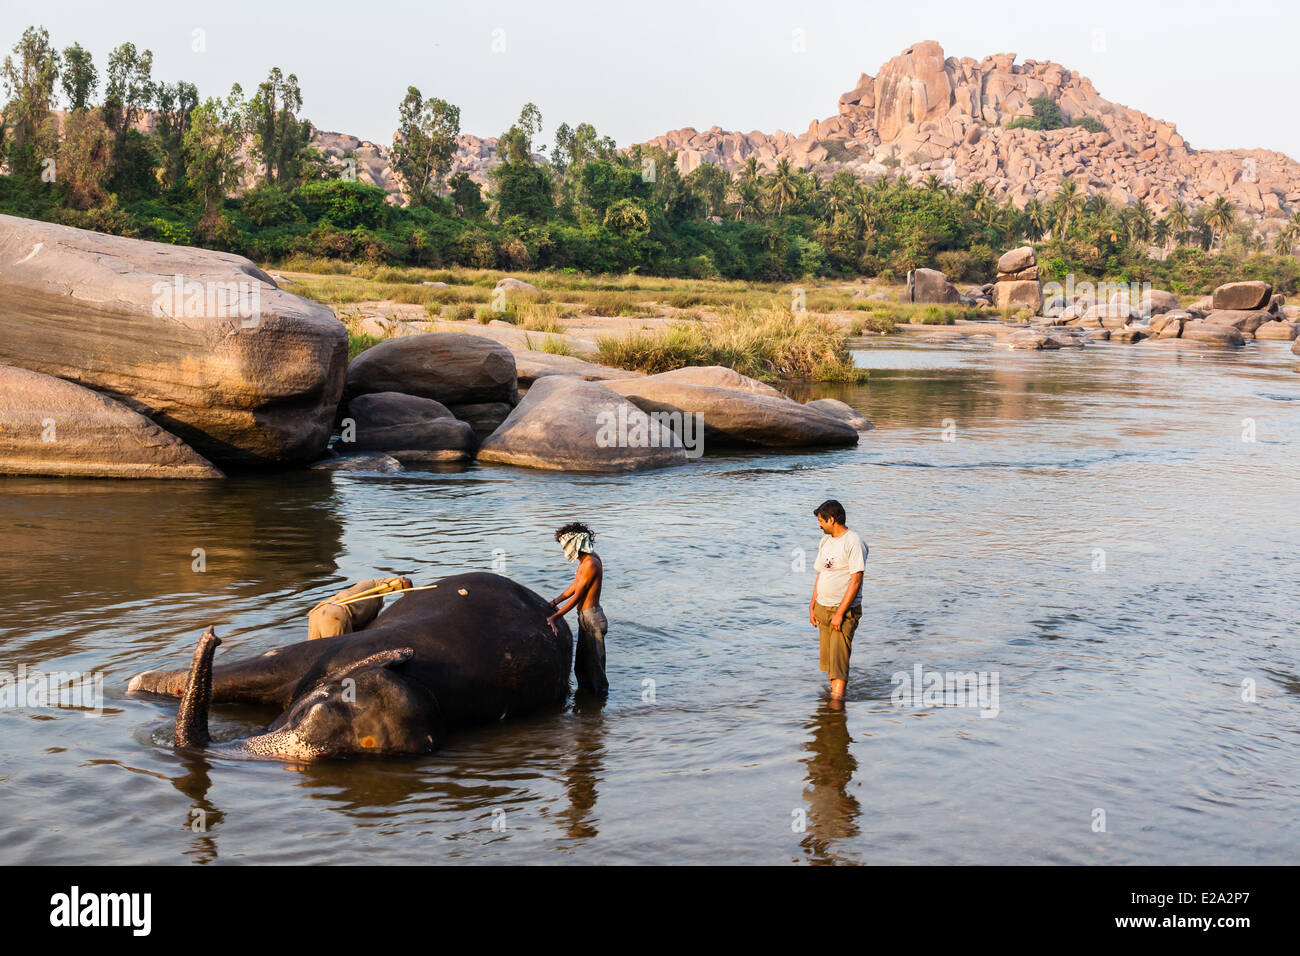 L'Inde, l'état de Karnataka, Hampi, baignoire à l'éléphante Lakshmi Banque D'Images